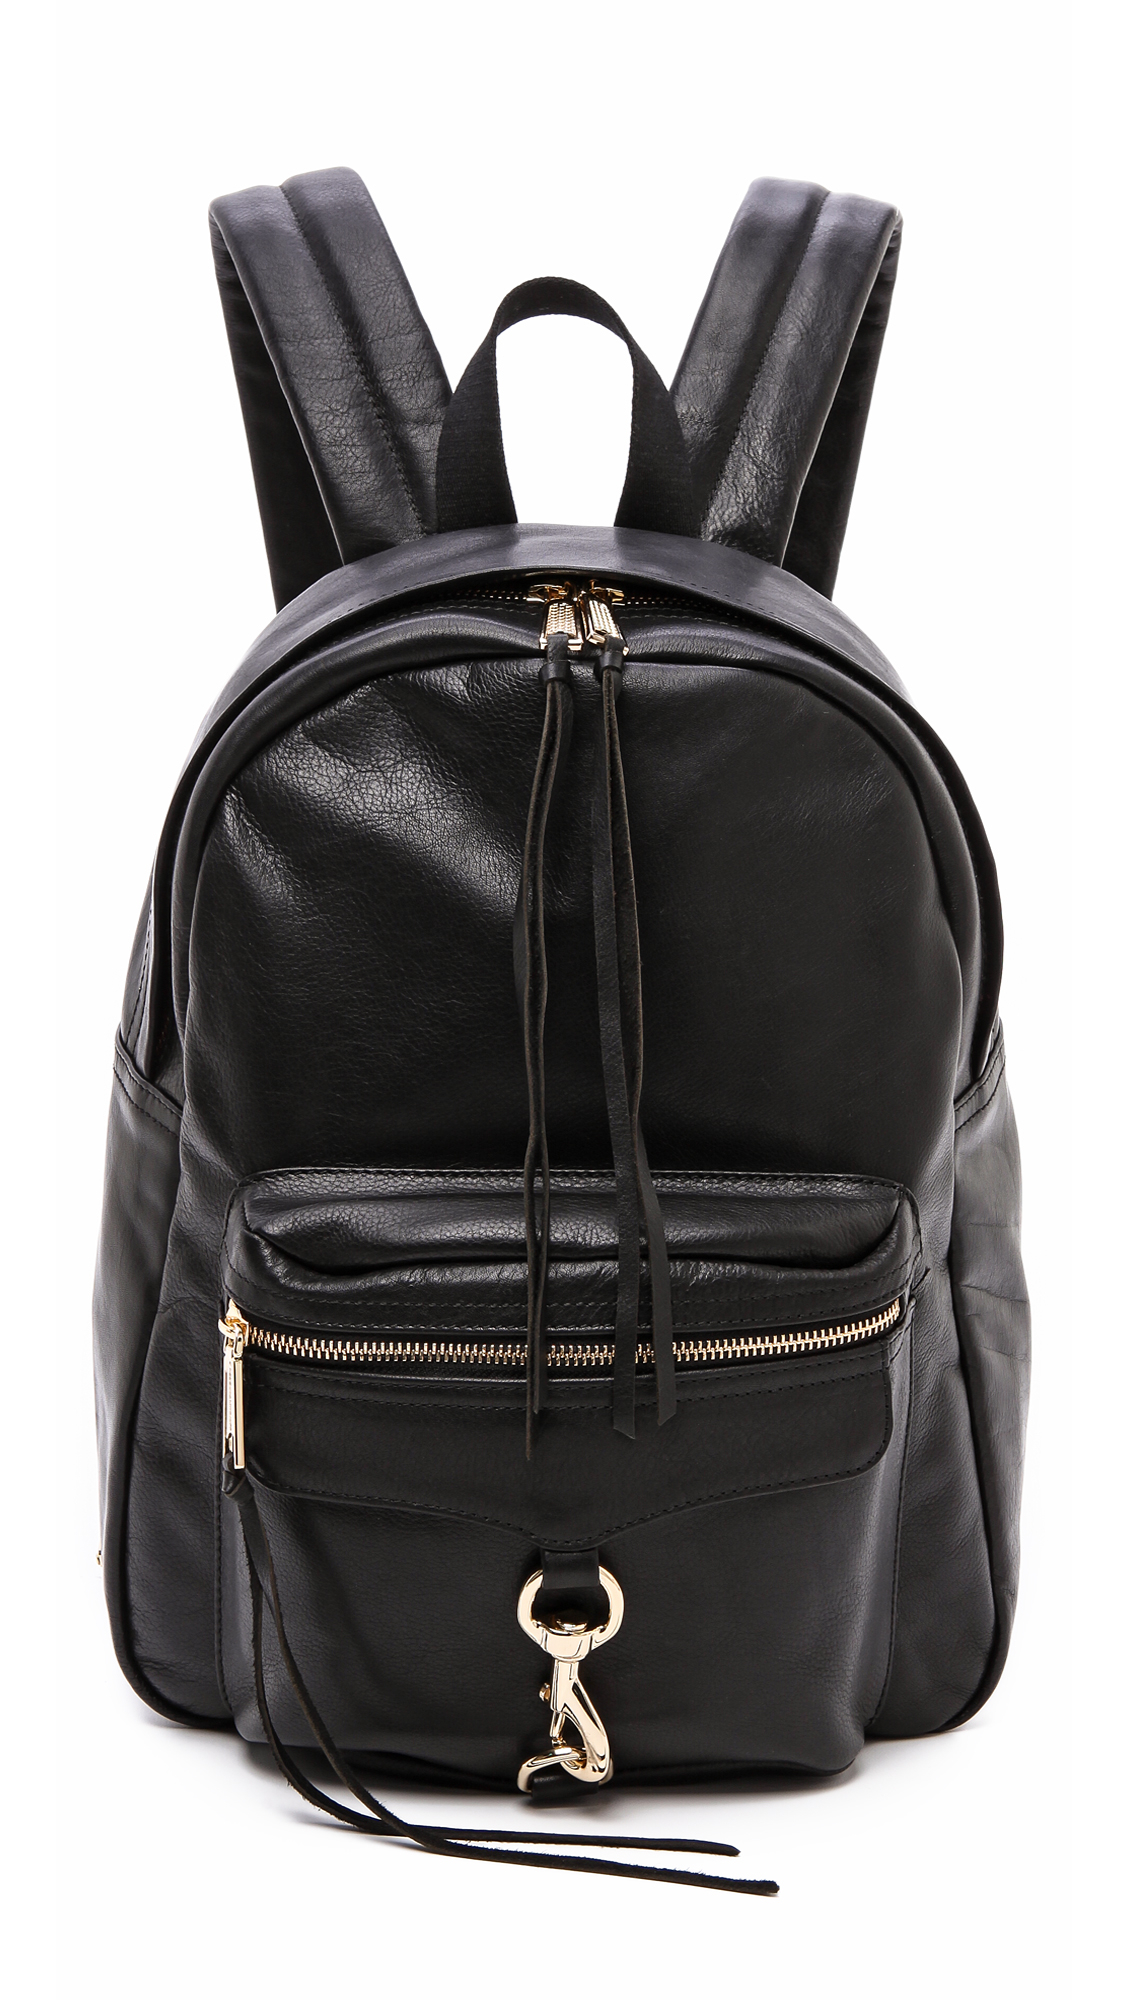 Lyst - Rebecca Minkoff Mab Backpack in Black